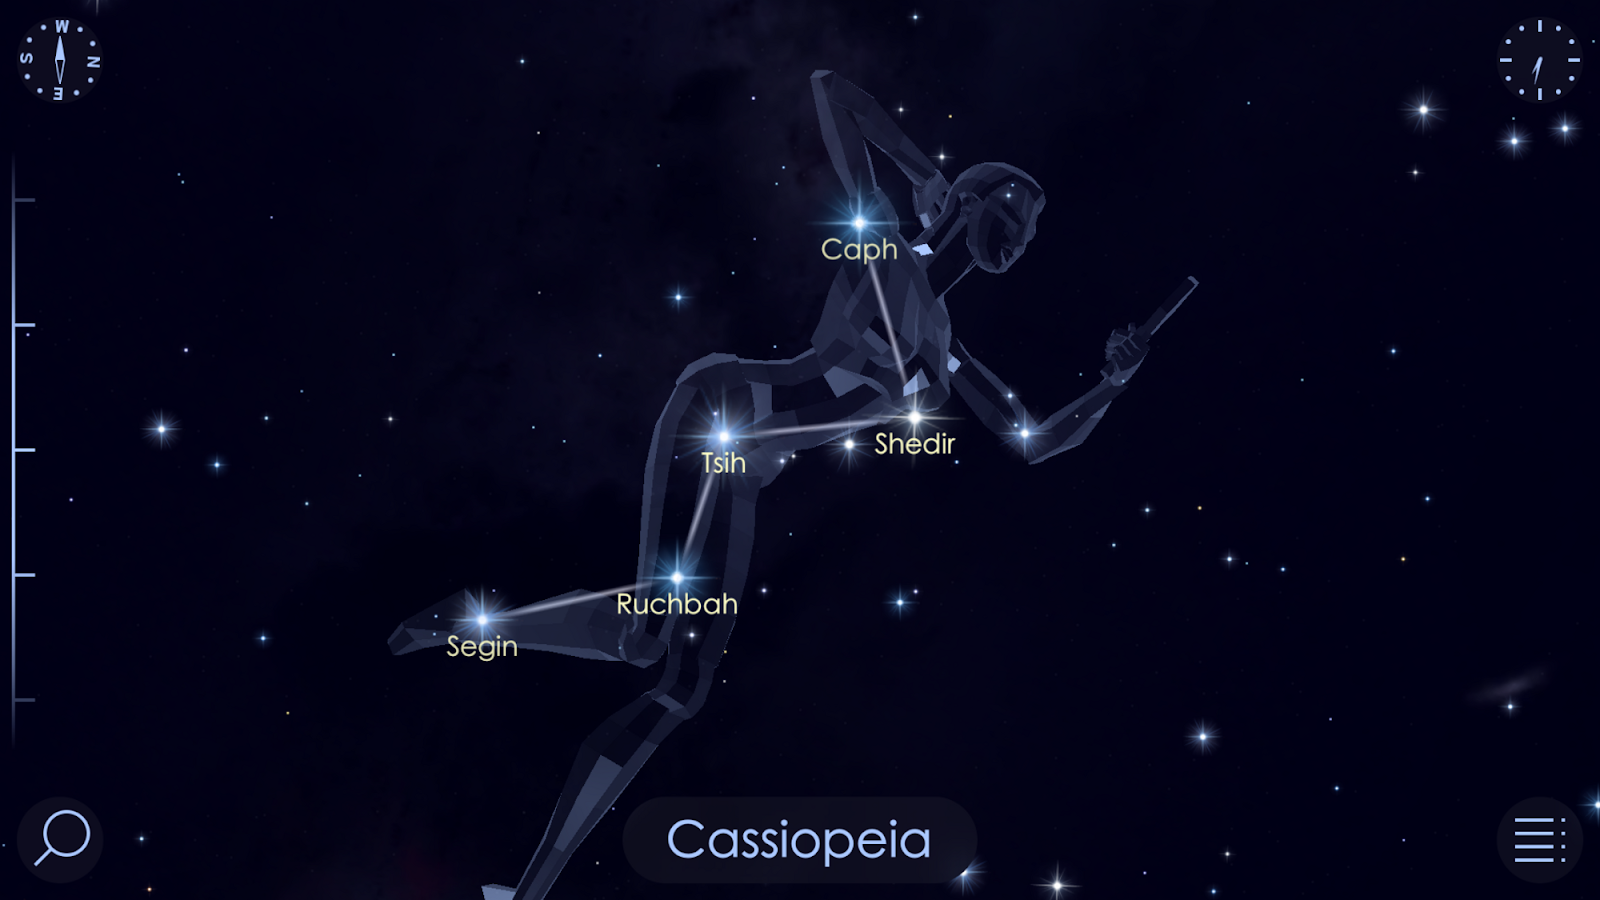 Созвездие Кассиопея. Созвездие Кассиопея на Звездном небе. Созвездие Кассиопея и астеризм. Изображение созвездия Кассиопея. Созвездие в форме буквы